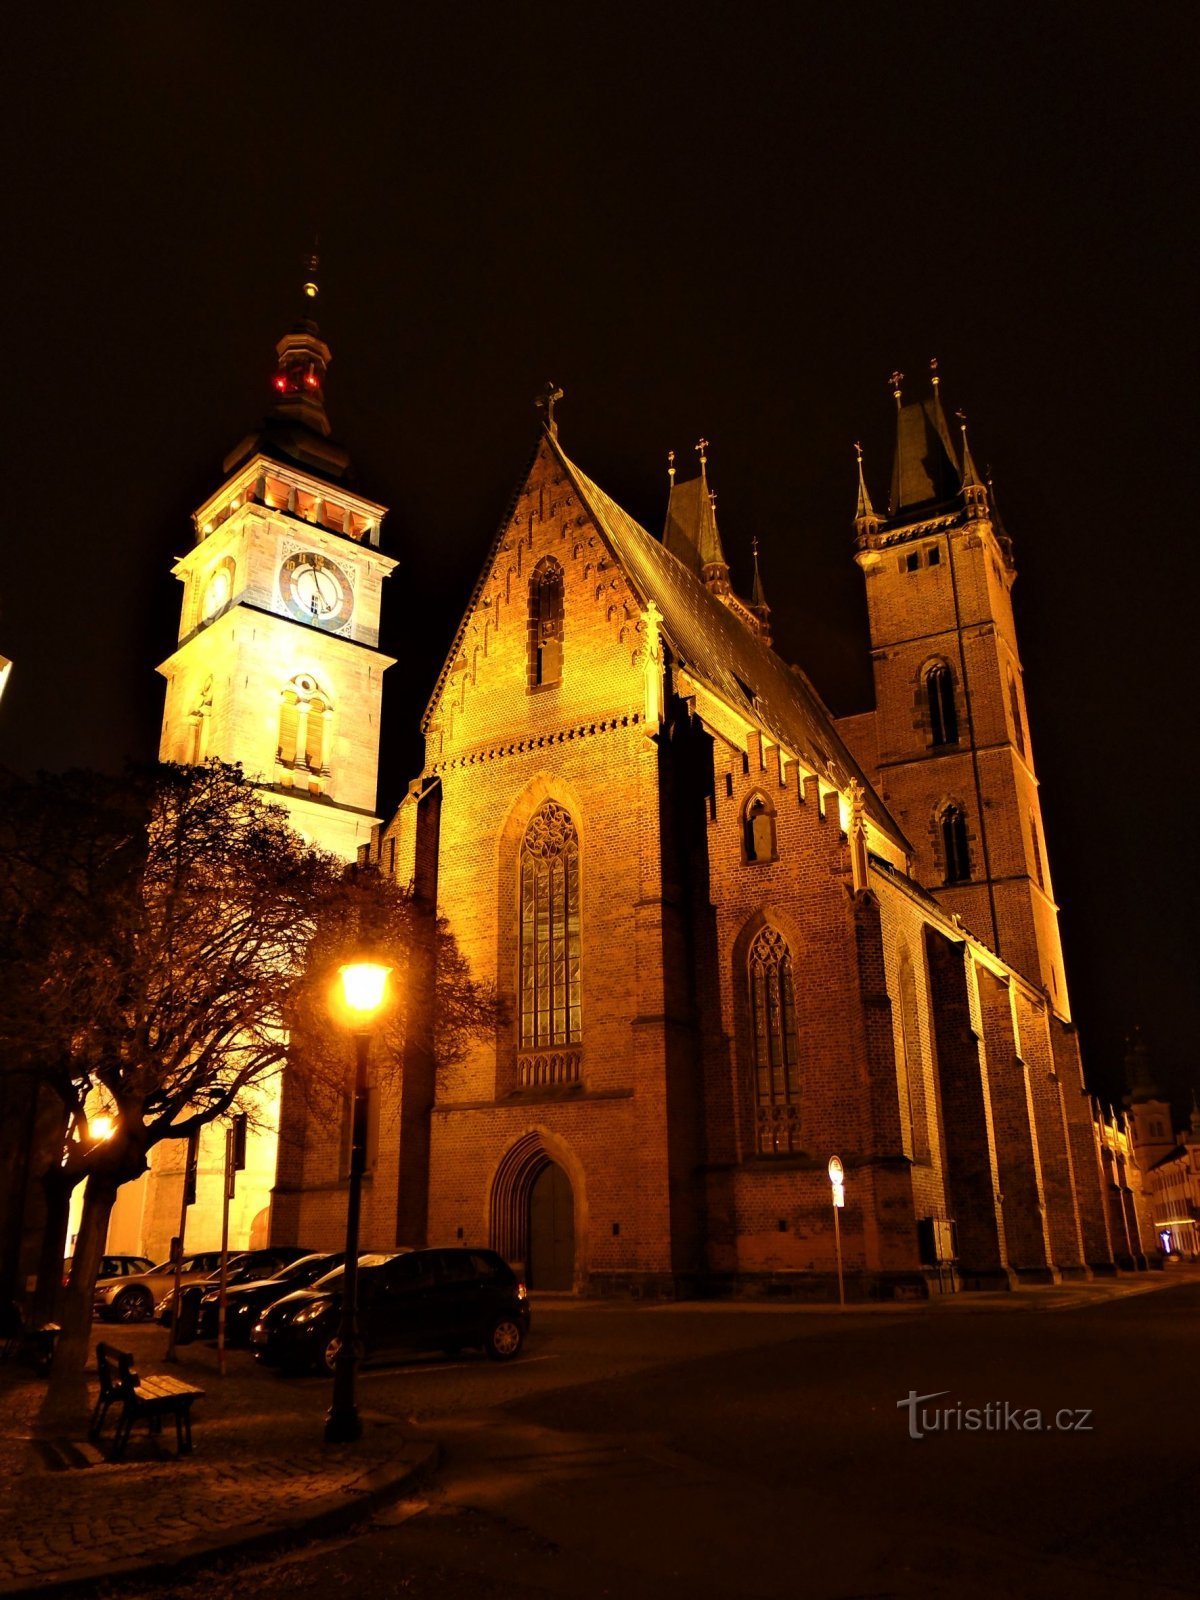 De witte toren en de kathedraal van St. Geest (Hradec Králové, 13.12.2020/XNUMX/XNUMX)